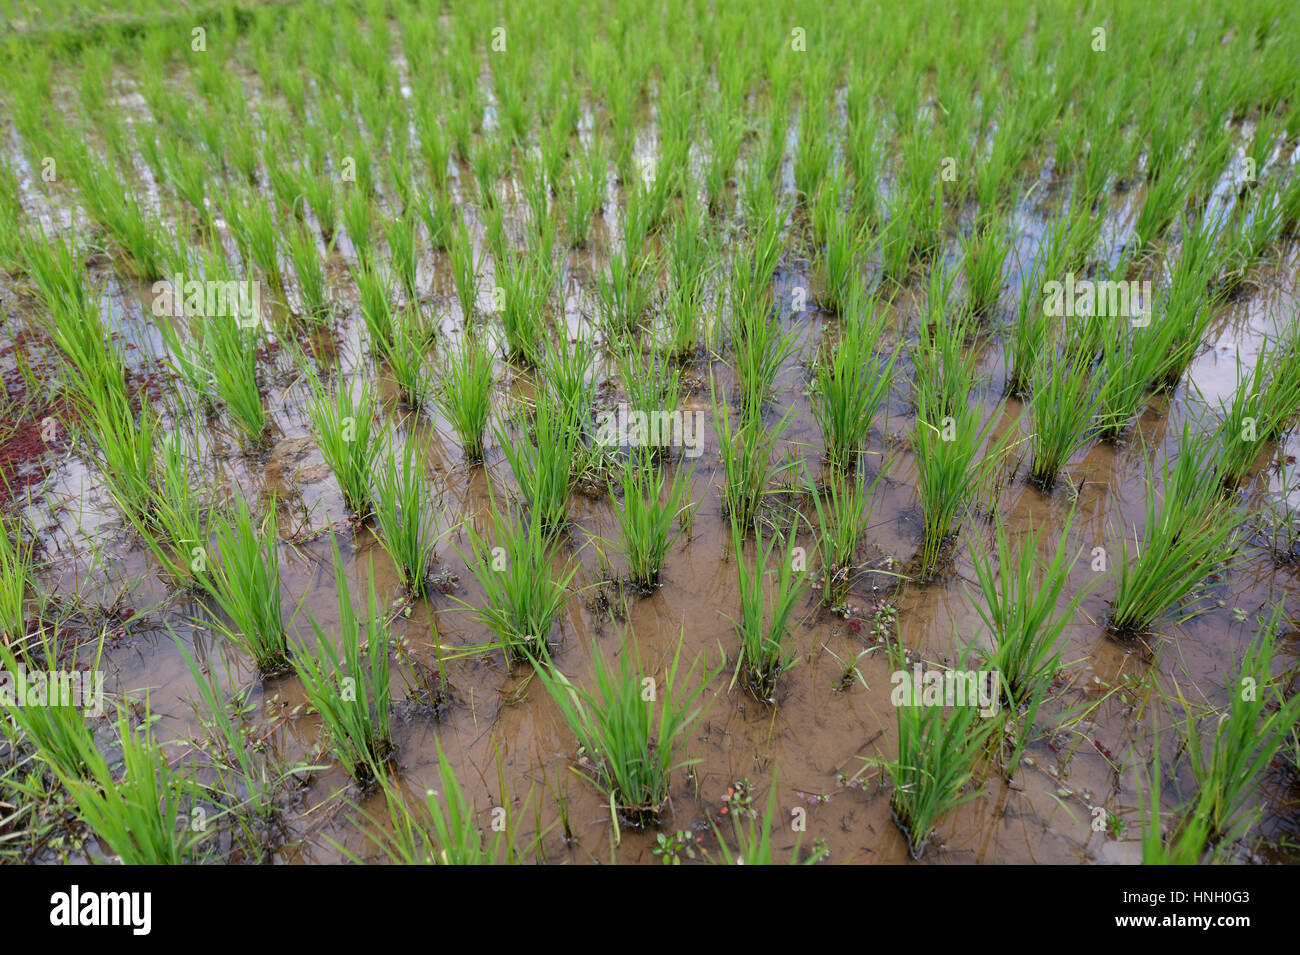 Le riz paddy, Bevato, Tsiroanomandidy district, région Bongolava, Madagascar Banque D'Images